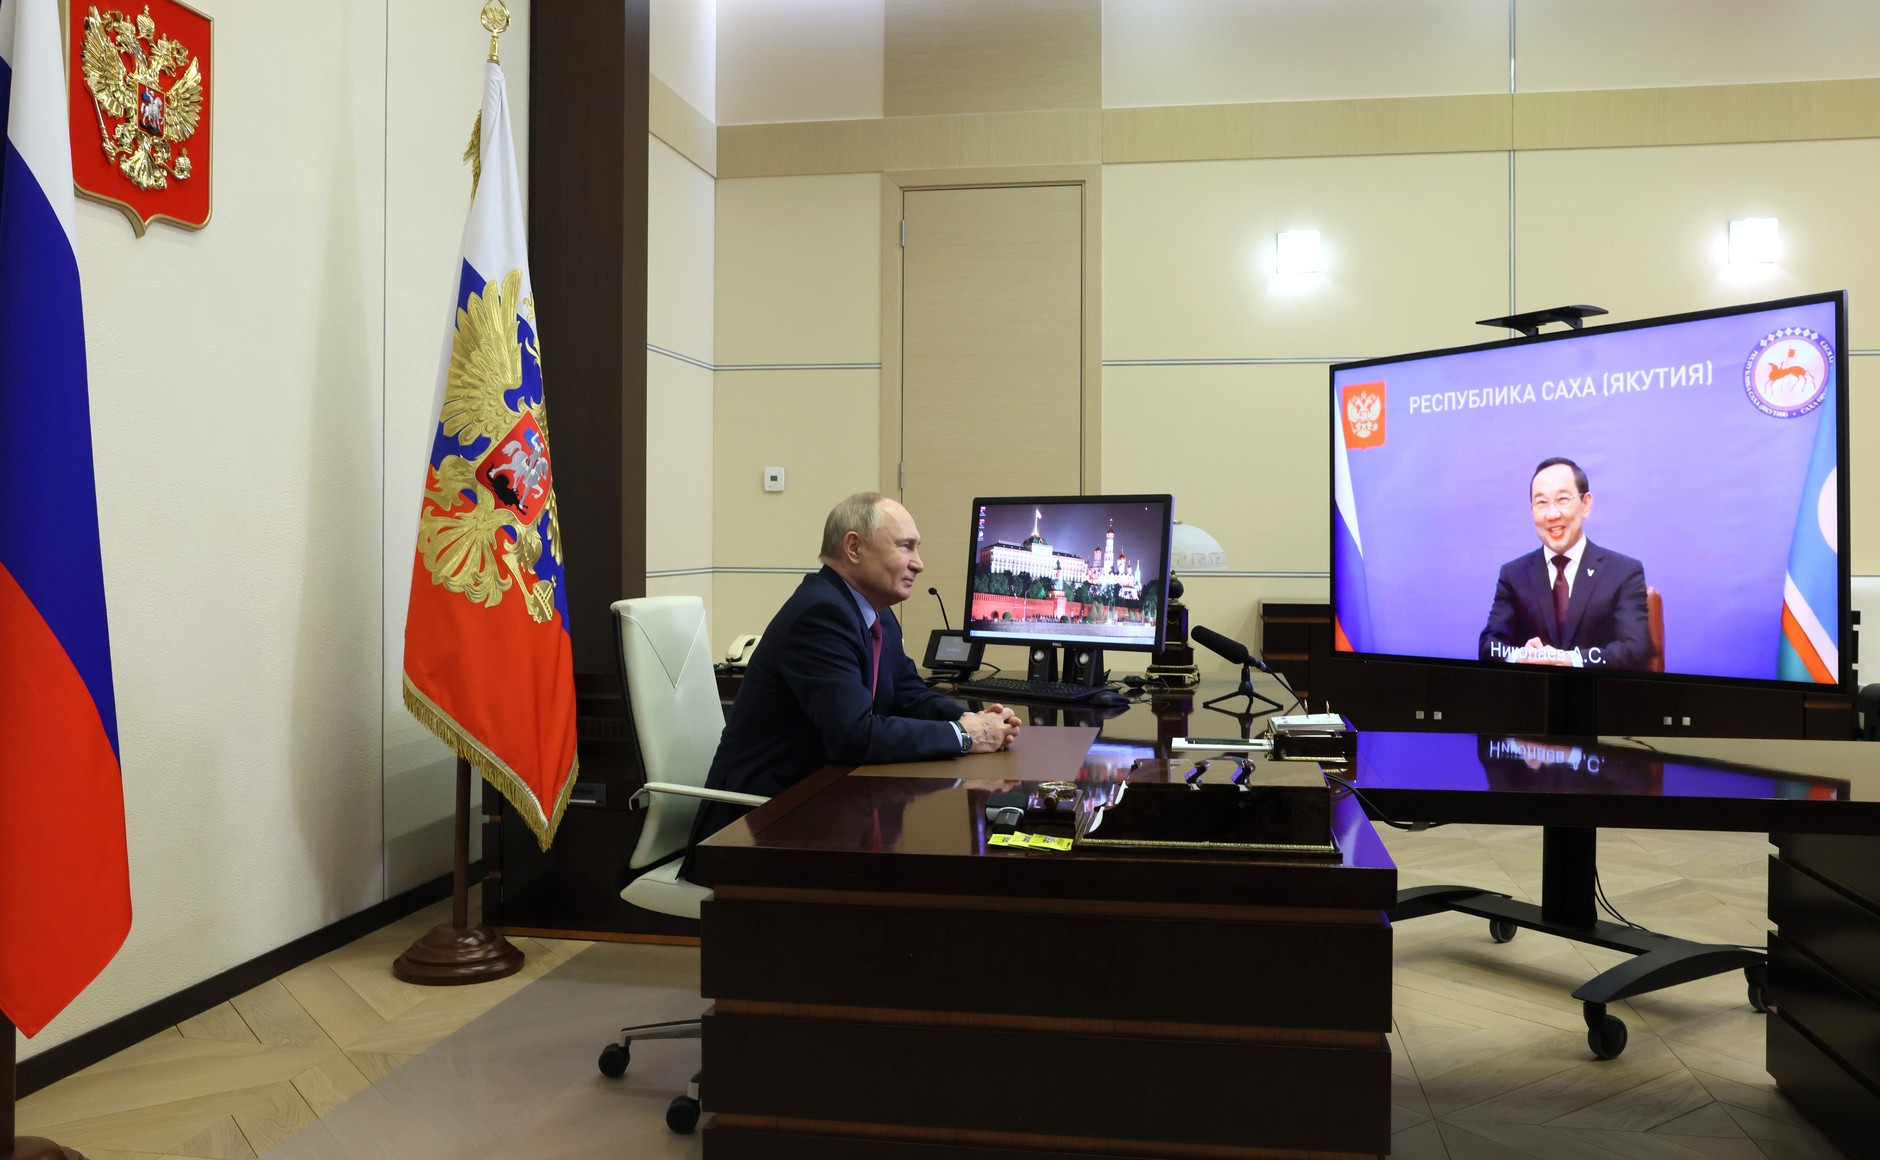 Юрий Семенов: «Мы с воодушевлением смотрели беседу Владимира Путина с главой Якутии»